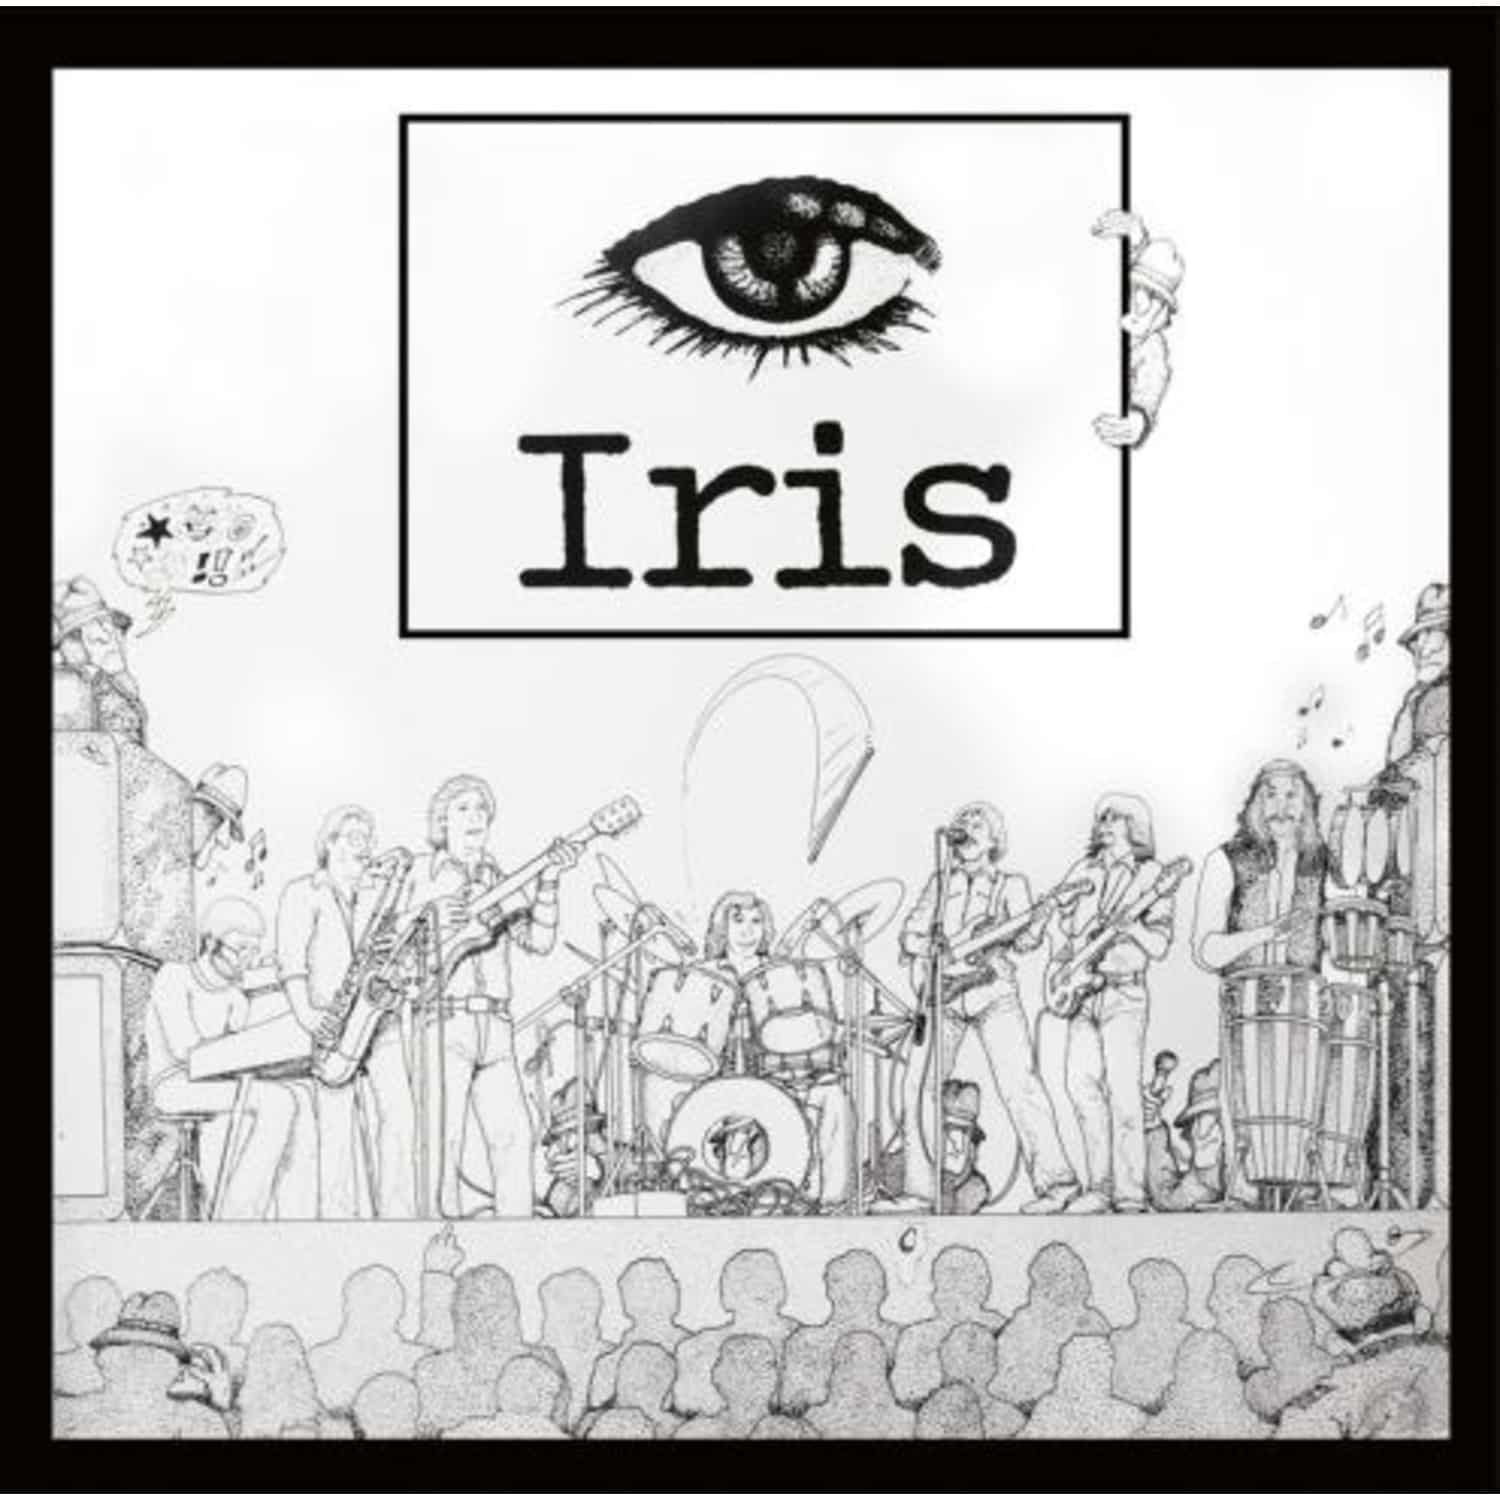 Iris - IRIS 